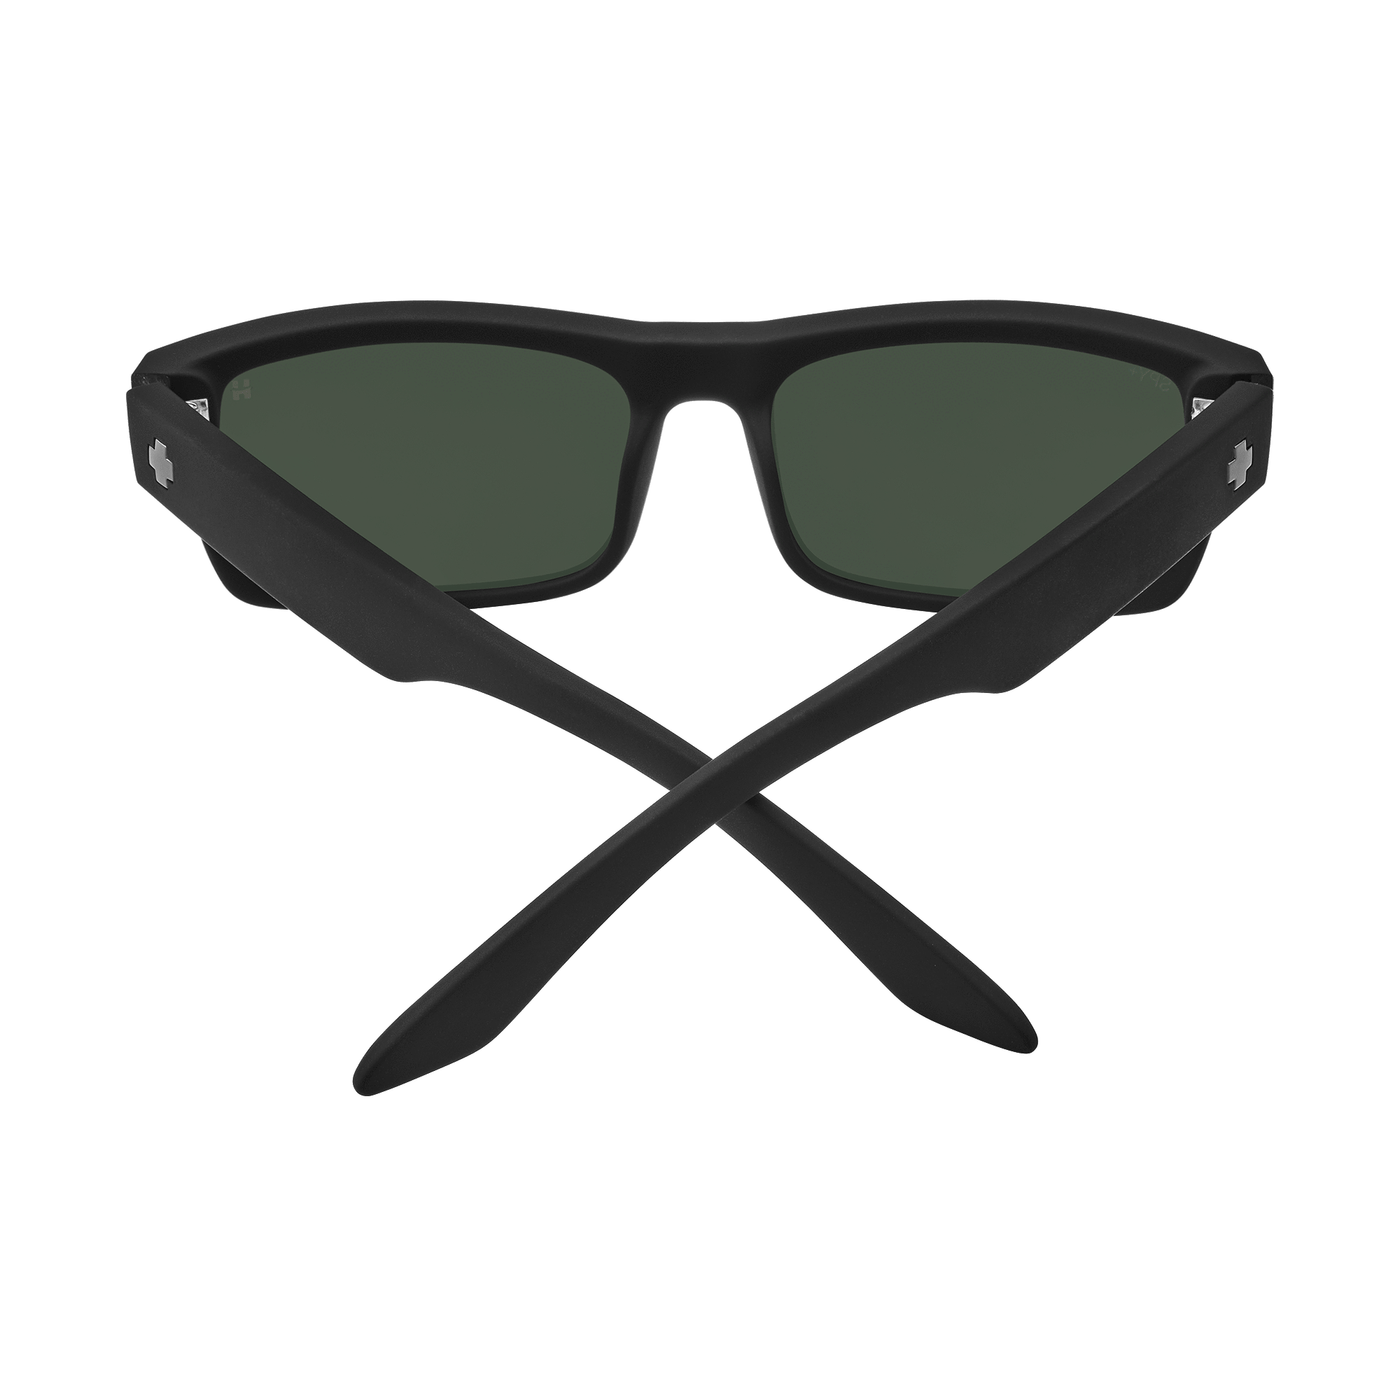  black frame gray/green lens sunglasses